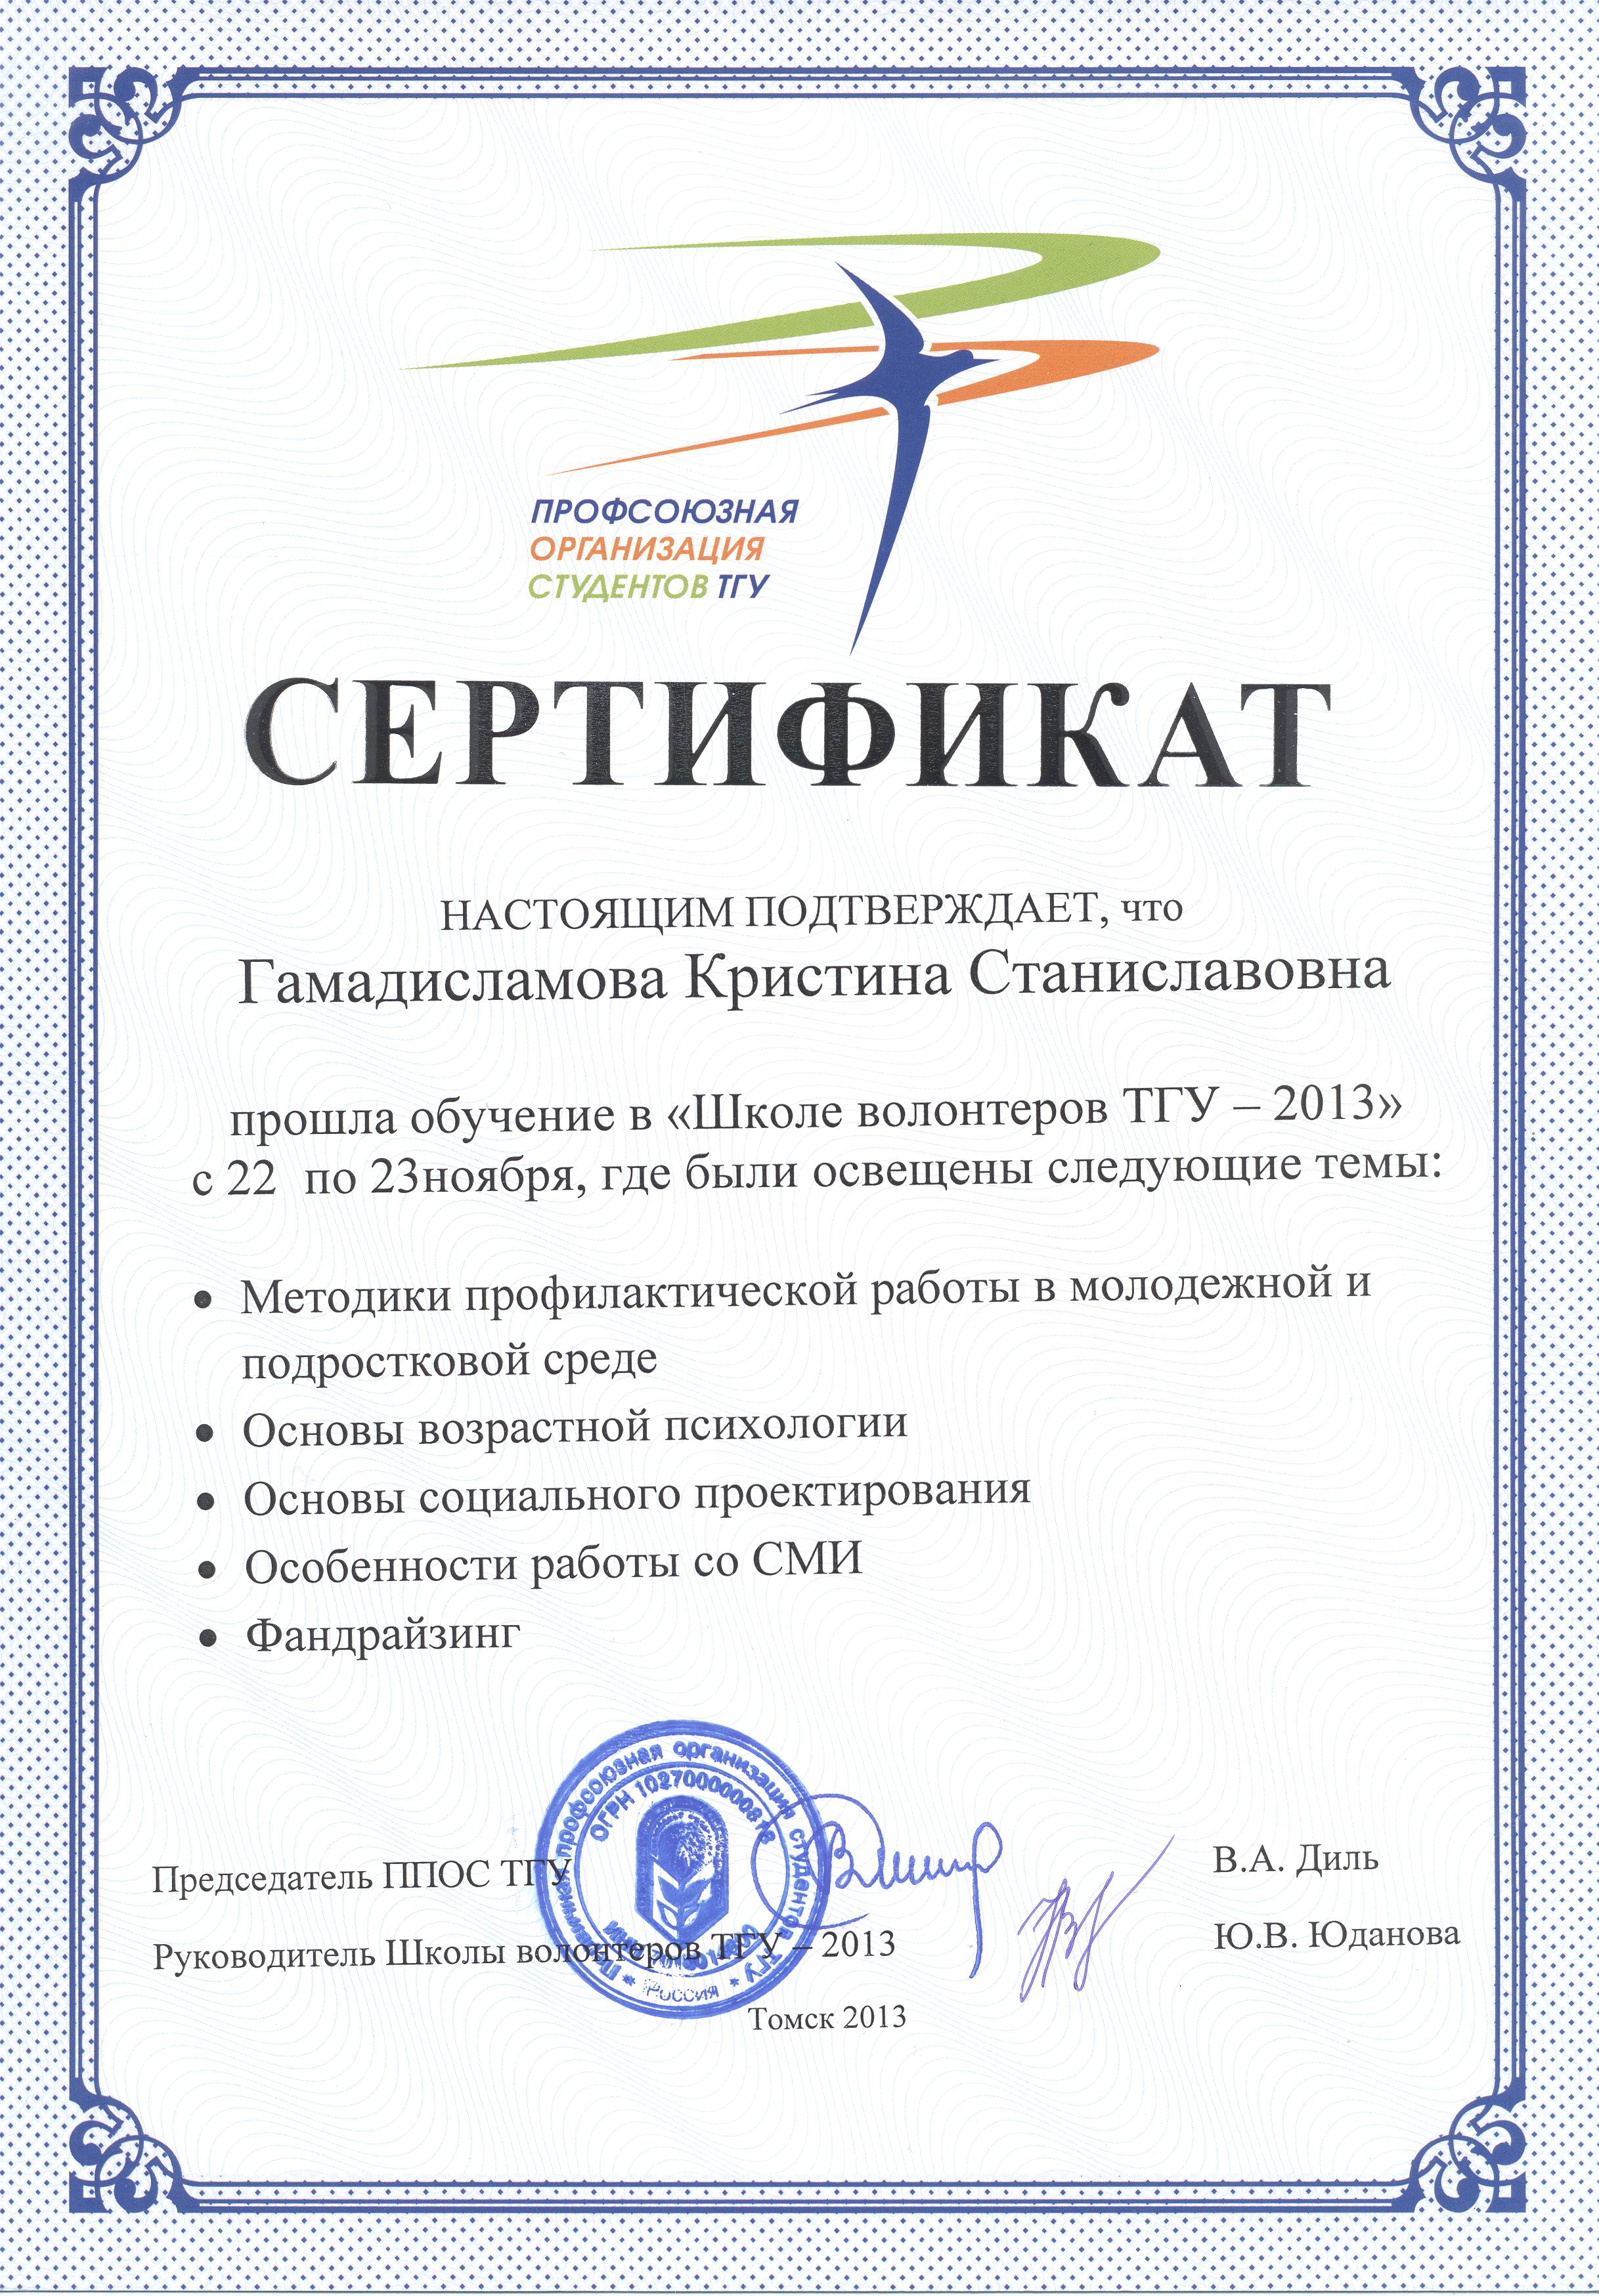 Сертификат Гамадисламовой Кристины